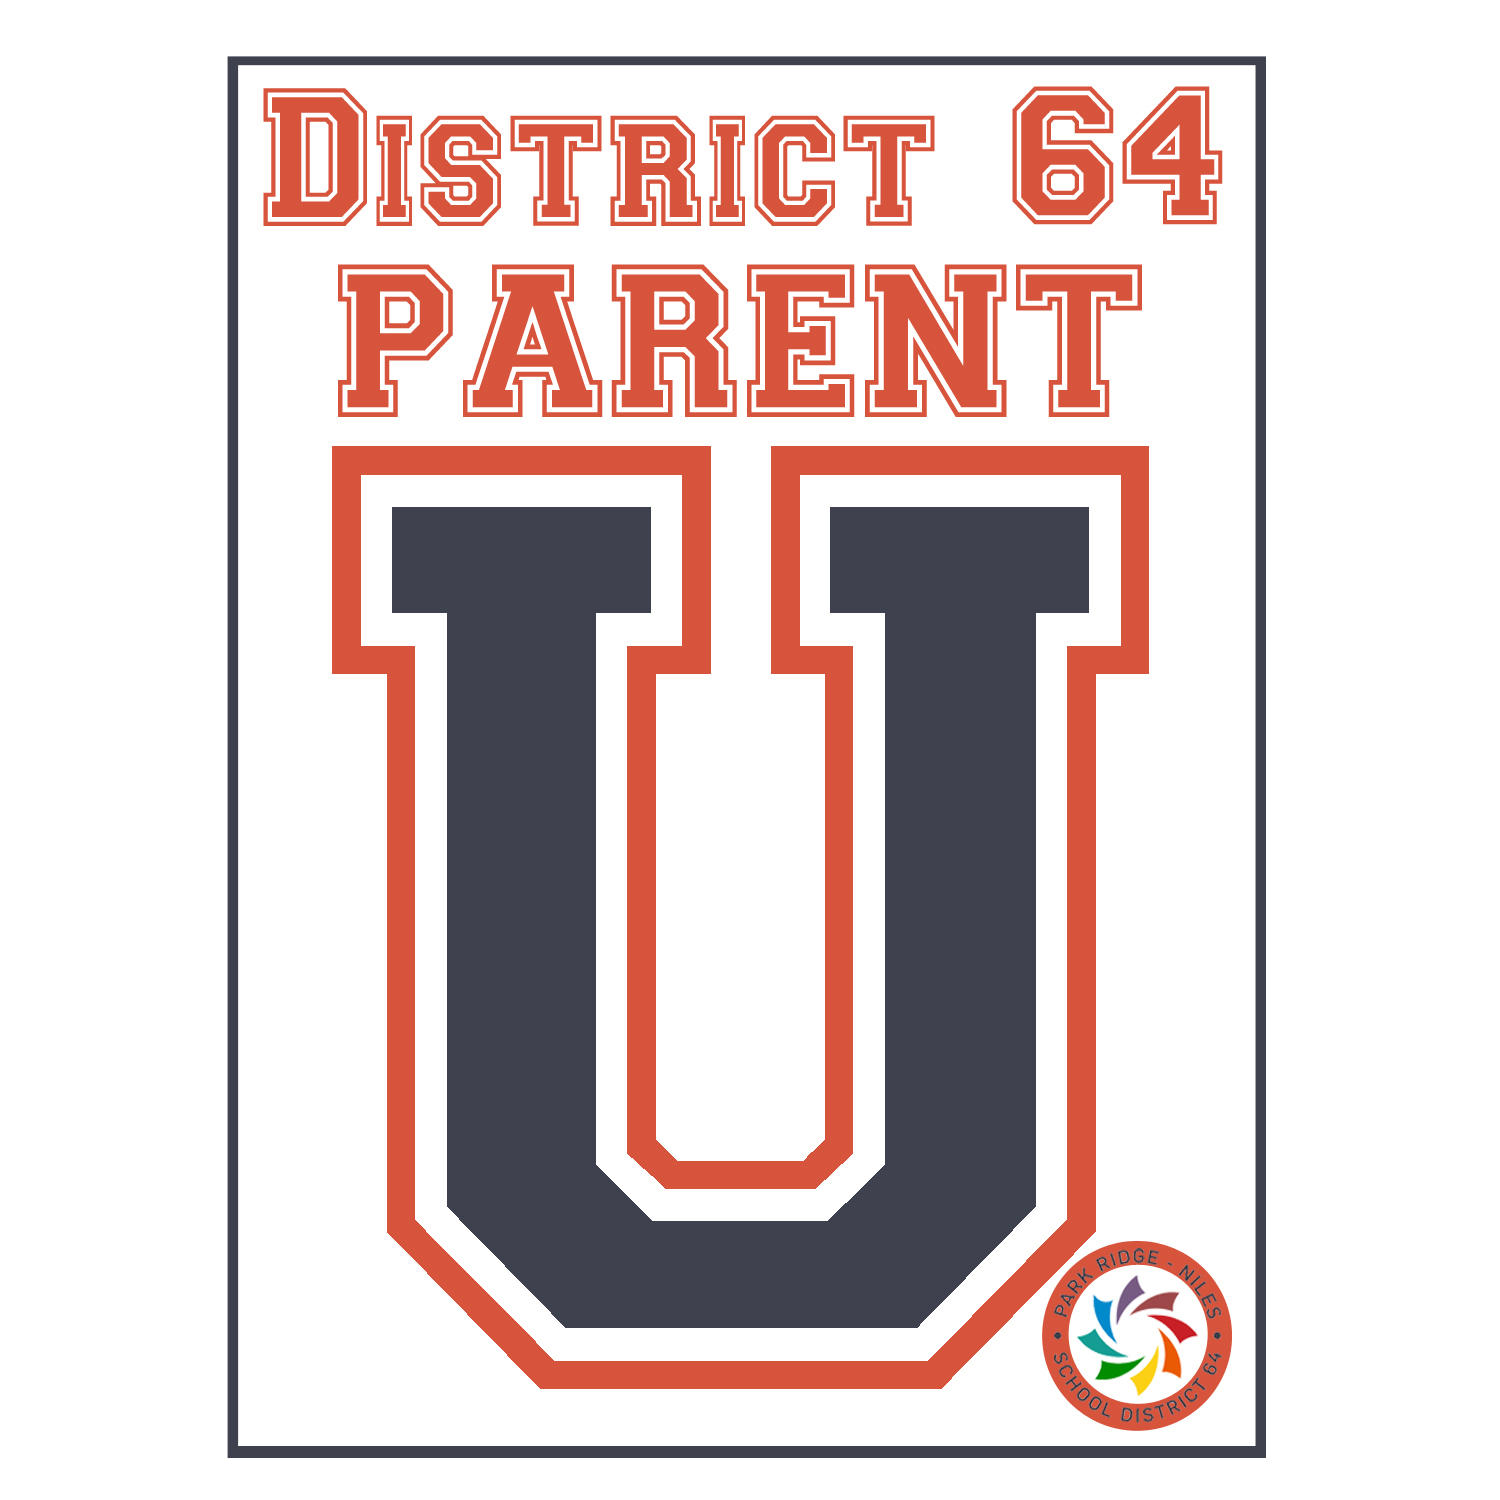 Parent U logo